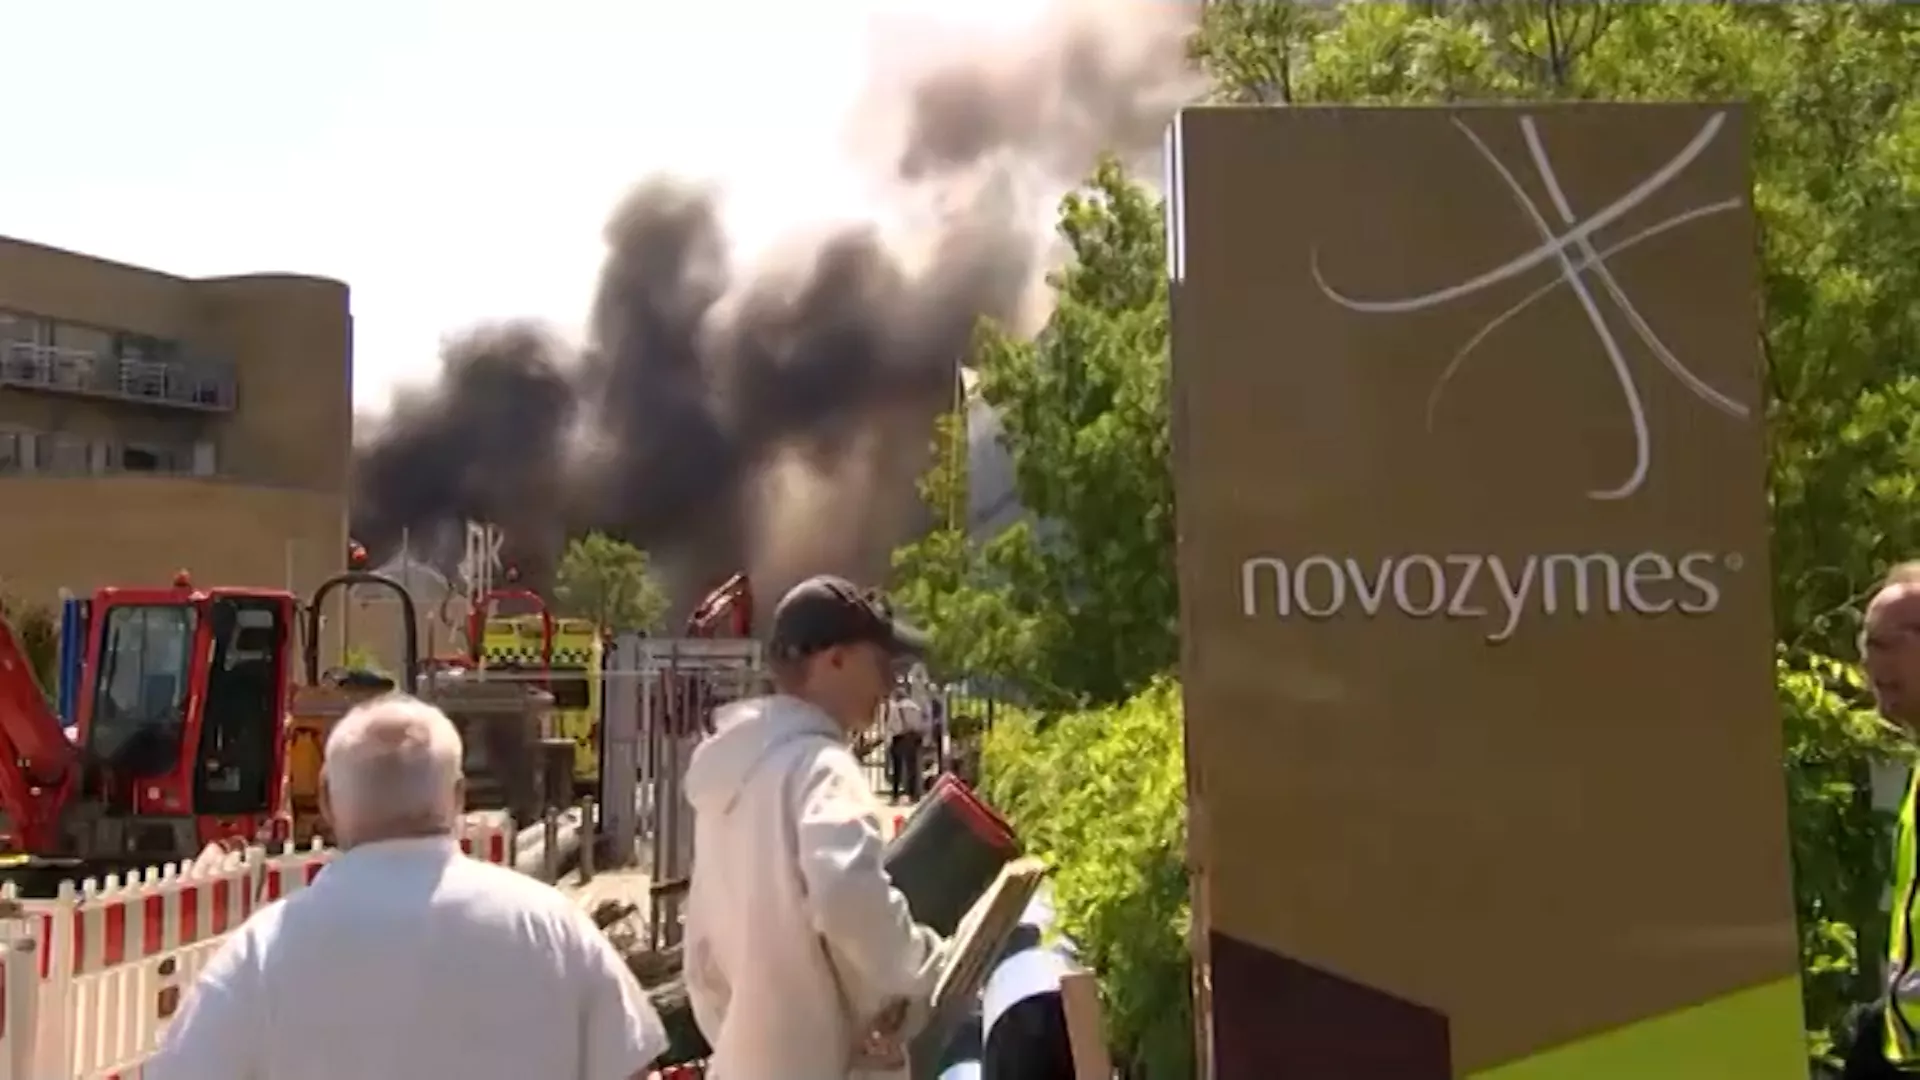 Një zjarr i madh përfshiu kompaninë farmaceutike daneze Novo Nordisk